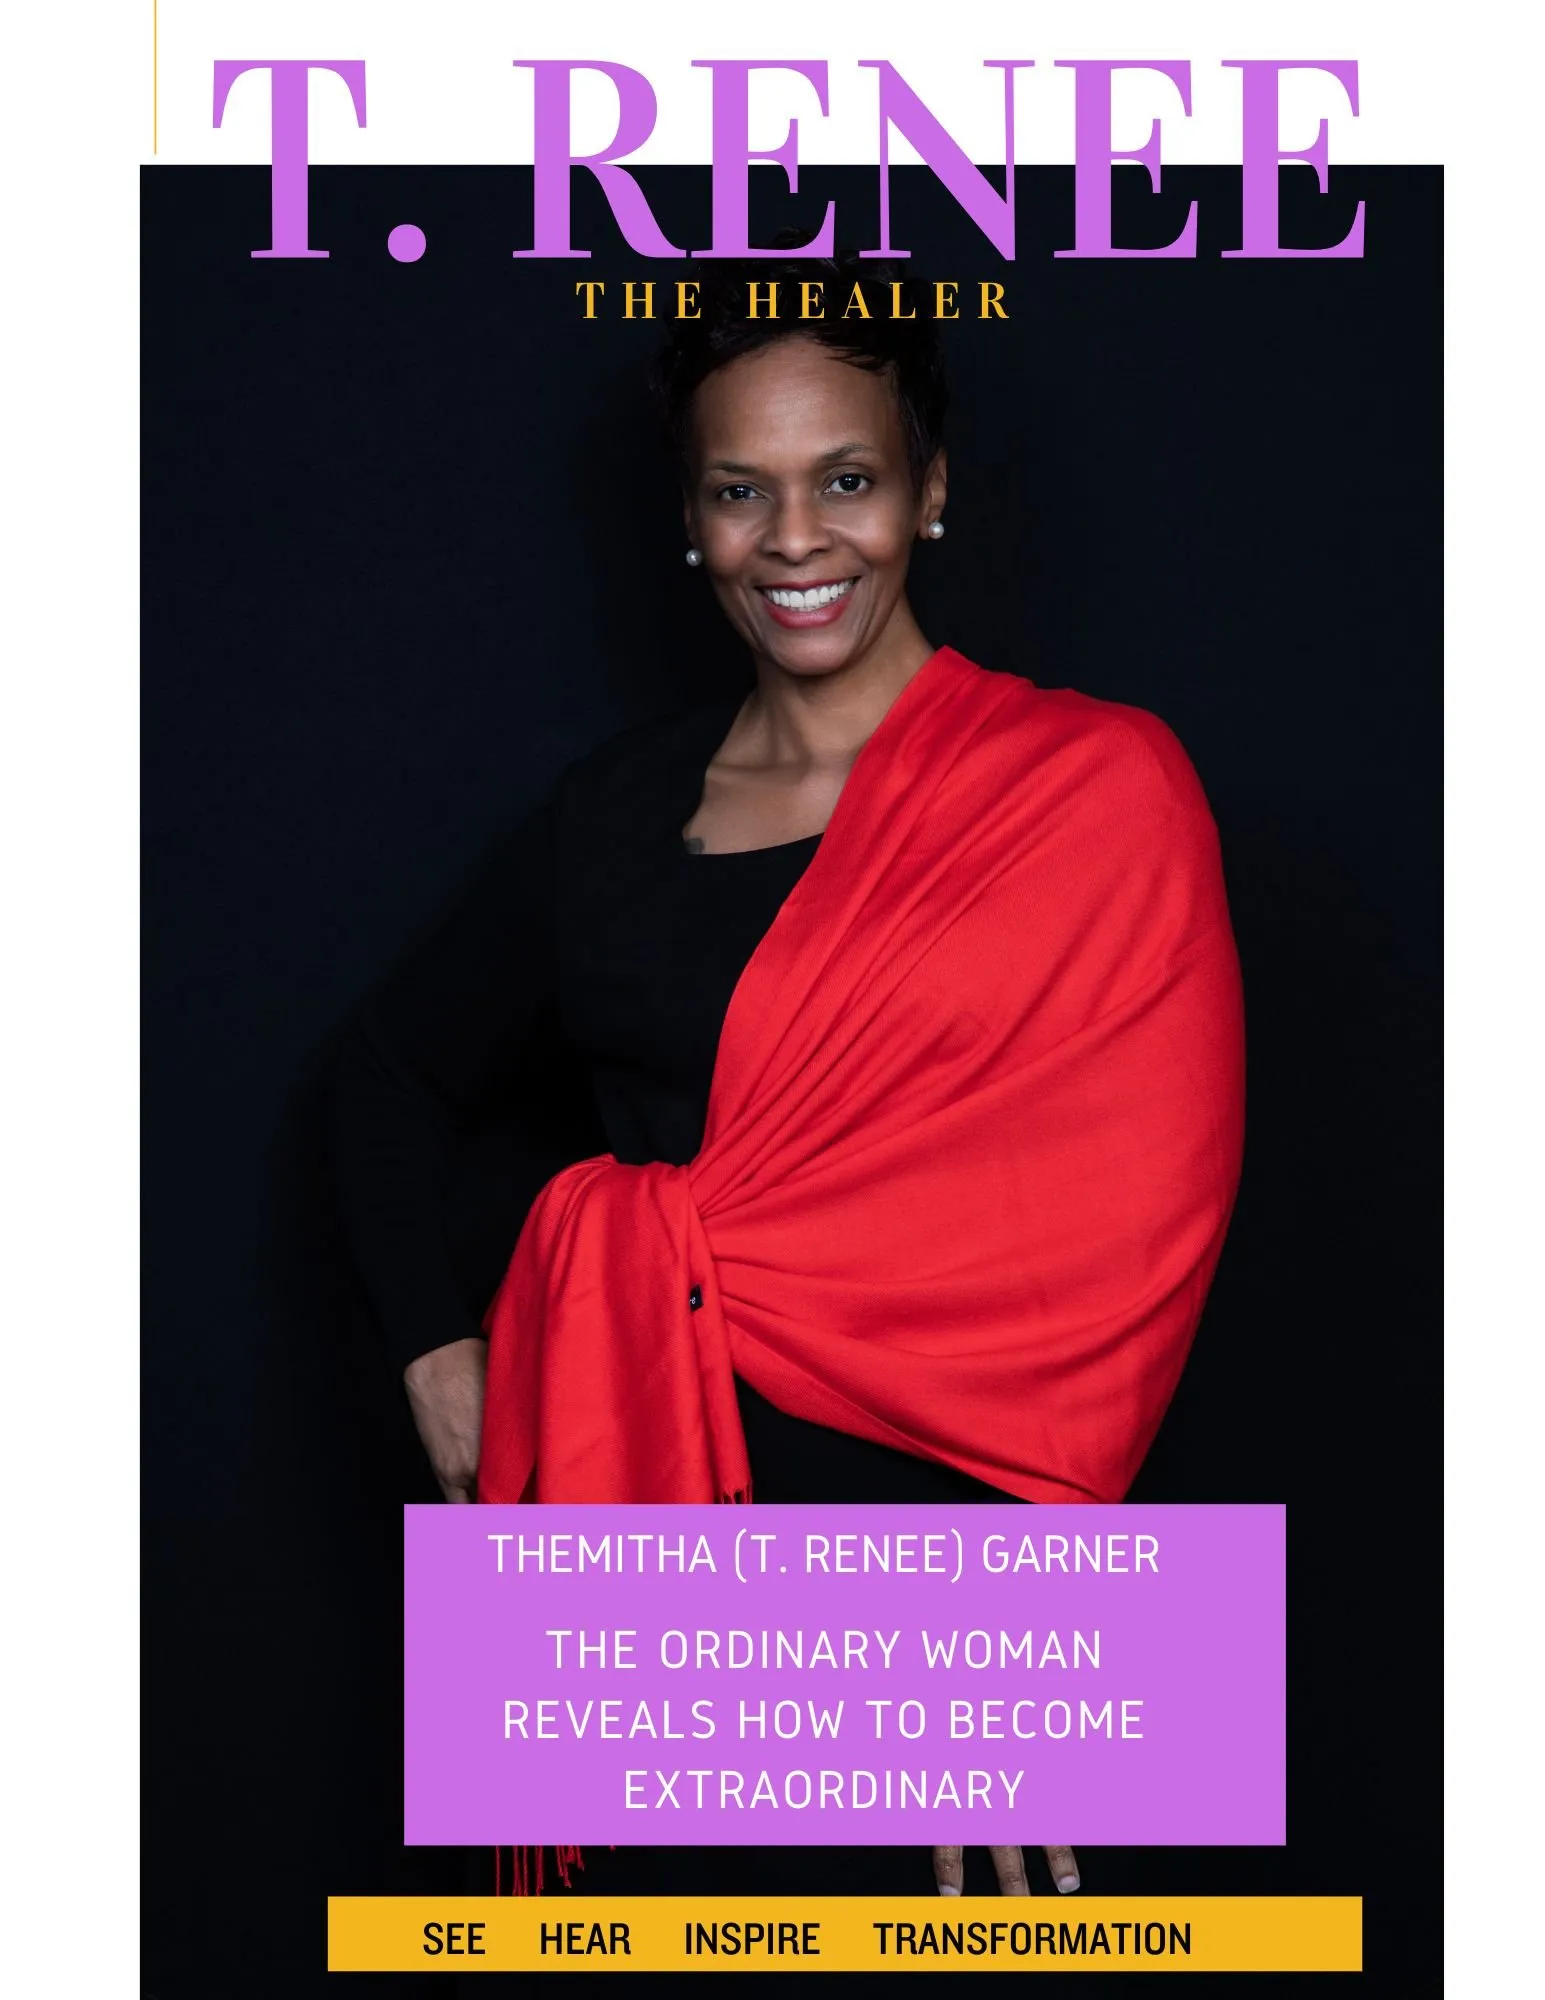 T. Renee Garner, the healer keynote speaker